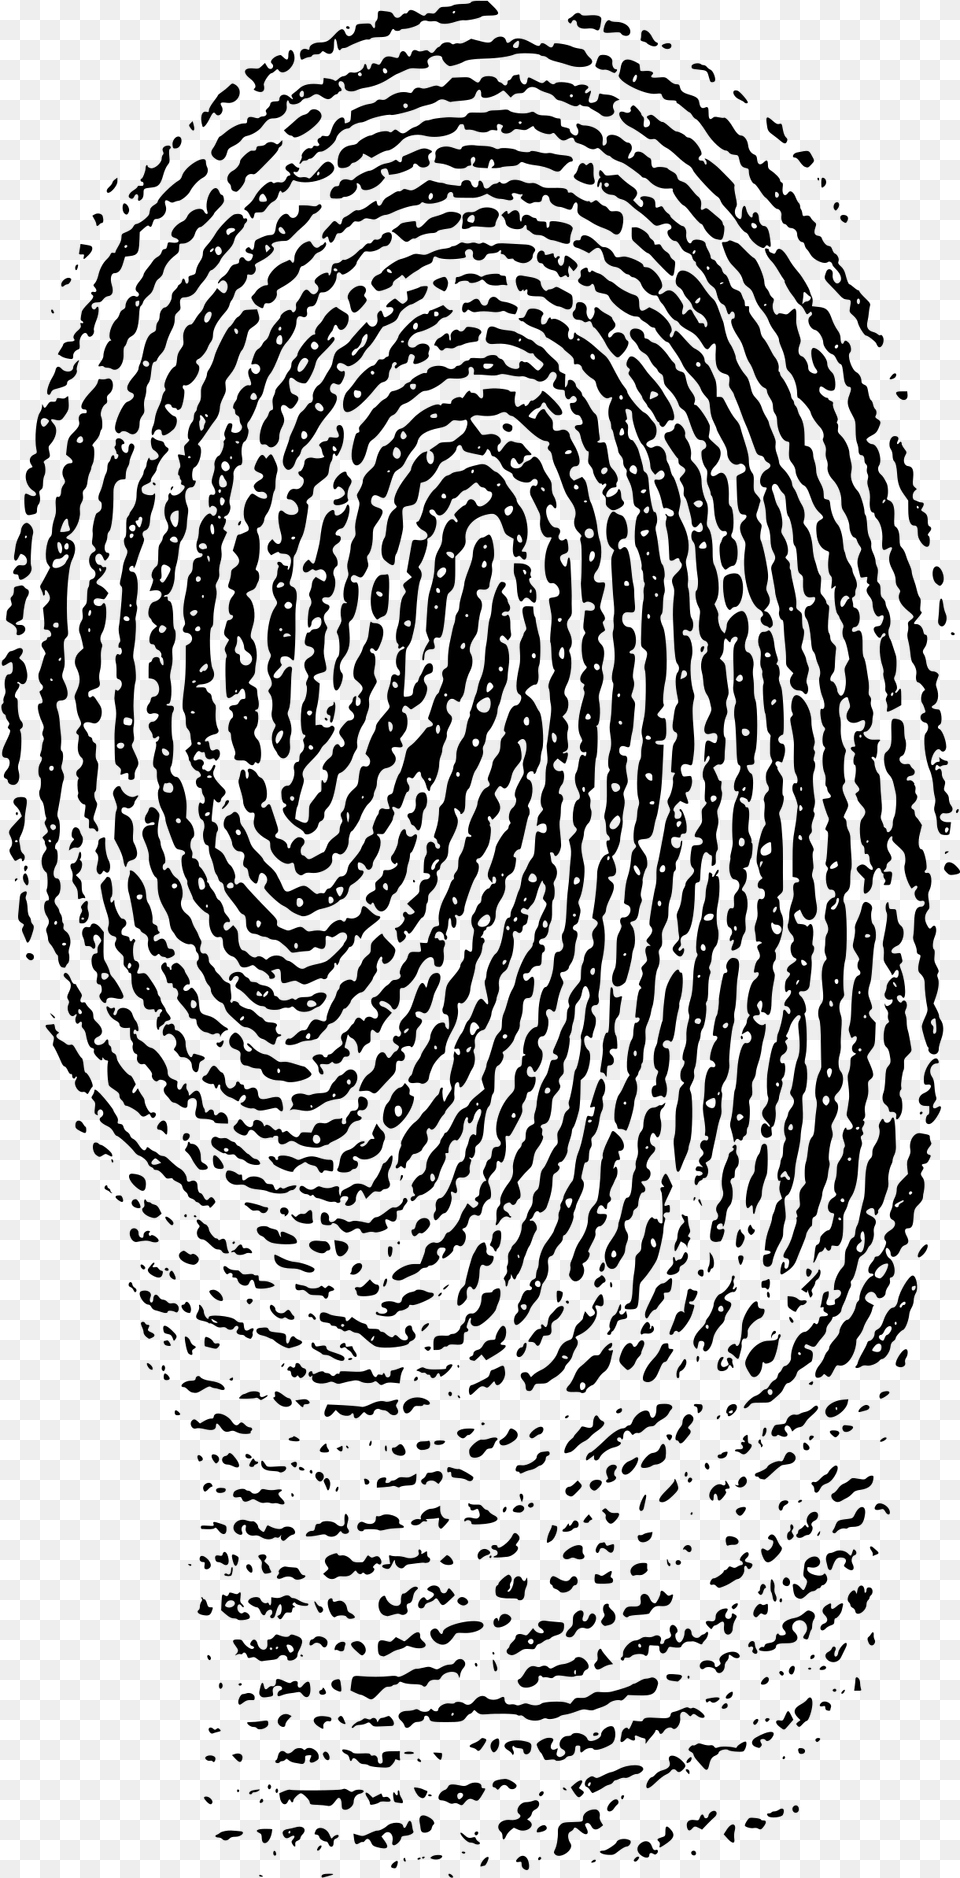 Fingerprints Images Fingerprint Evidence, Gray Png